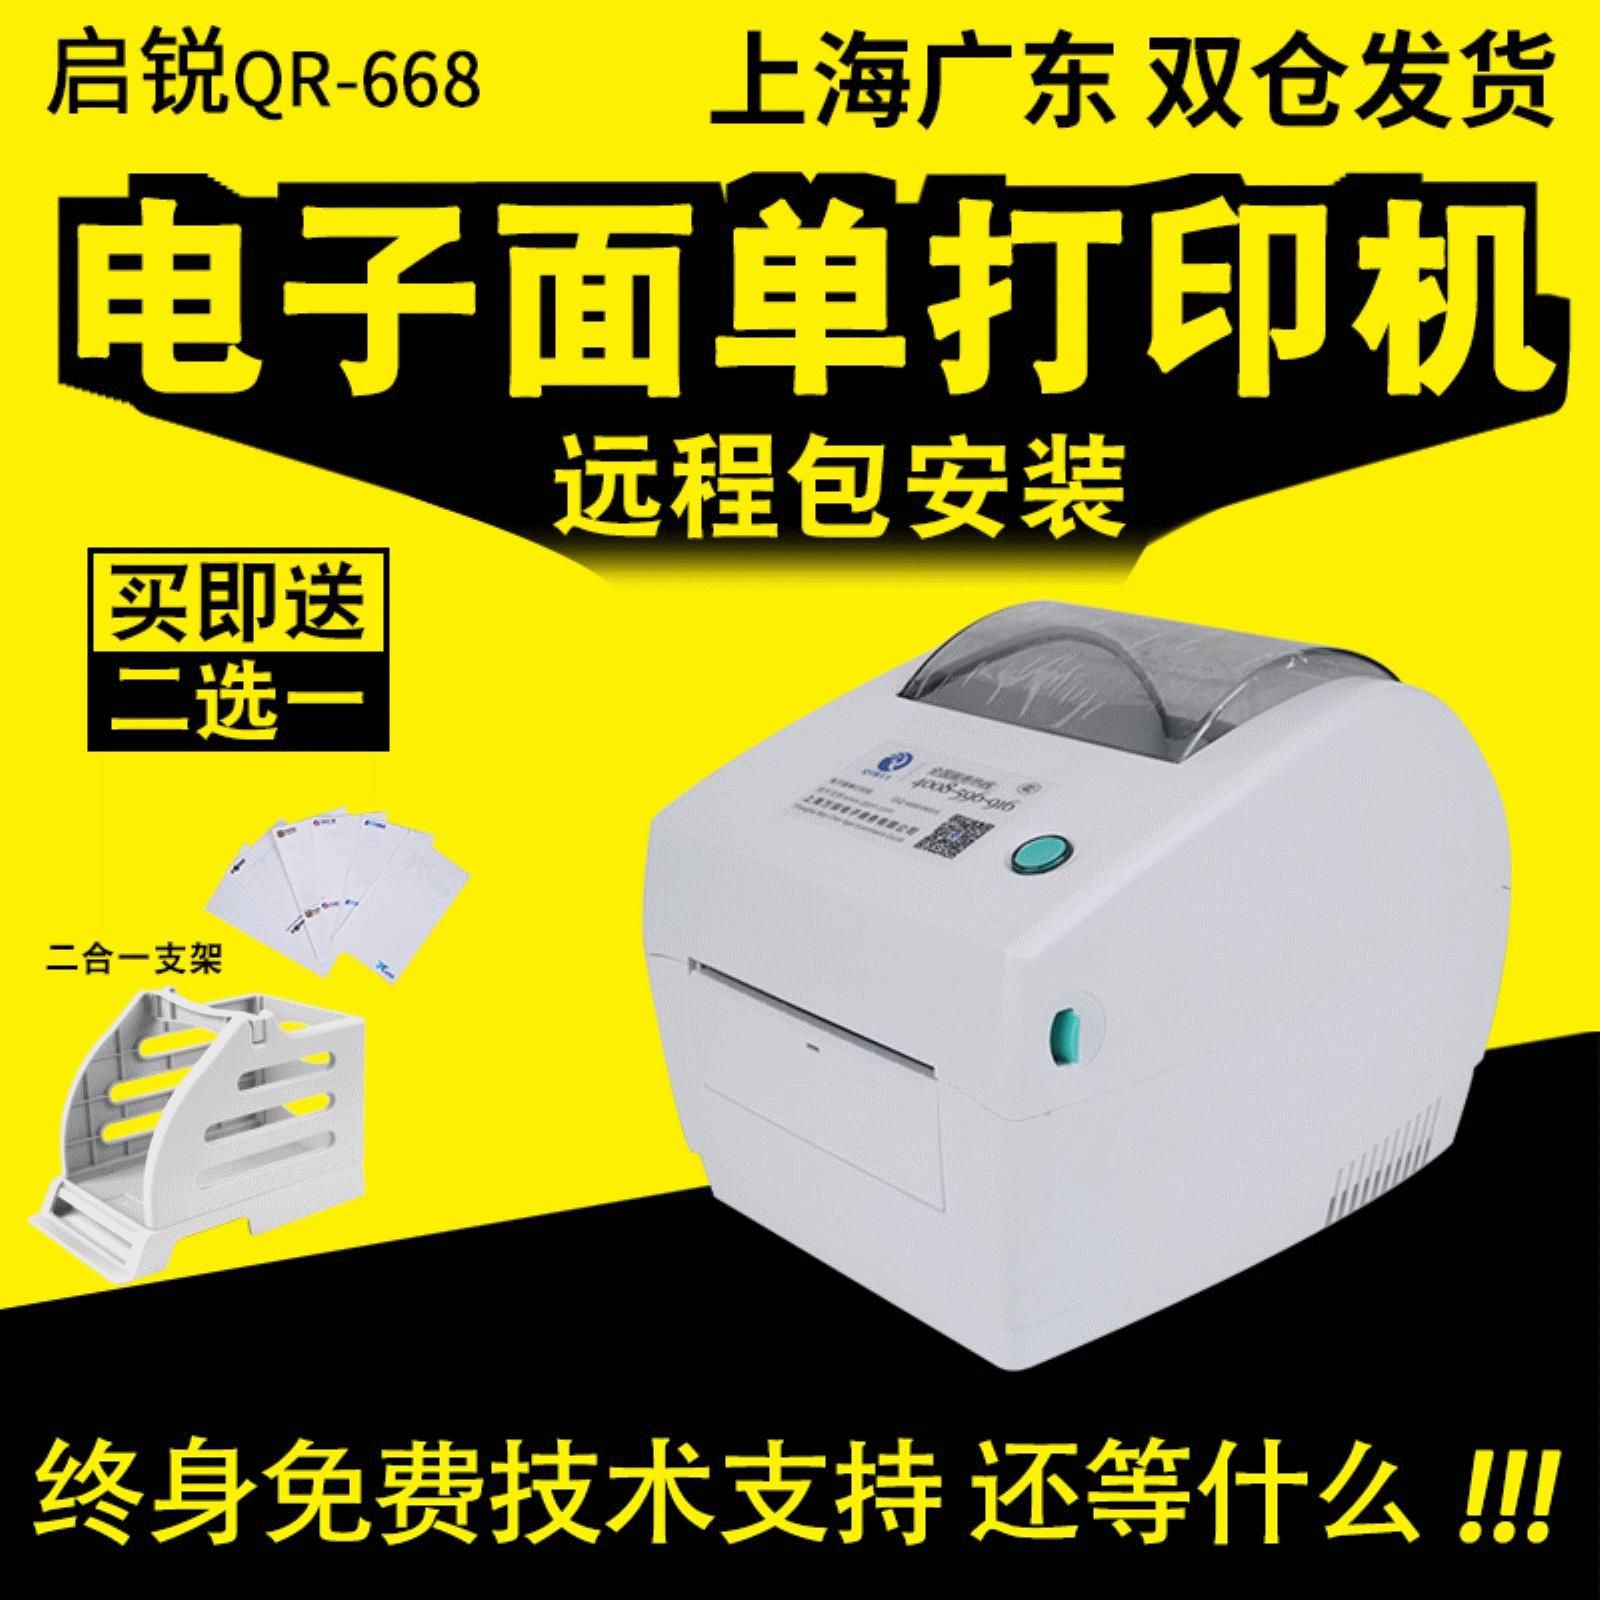 启锐QR-380A蓝牙便携手持式电子面单打印机